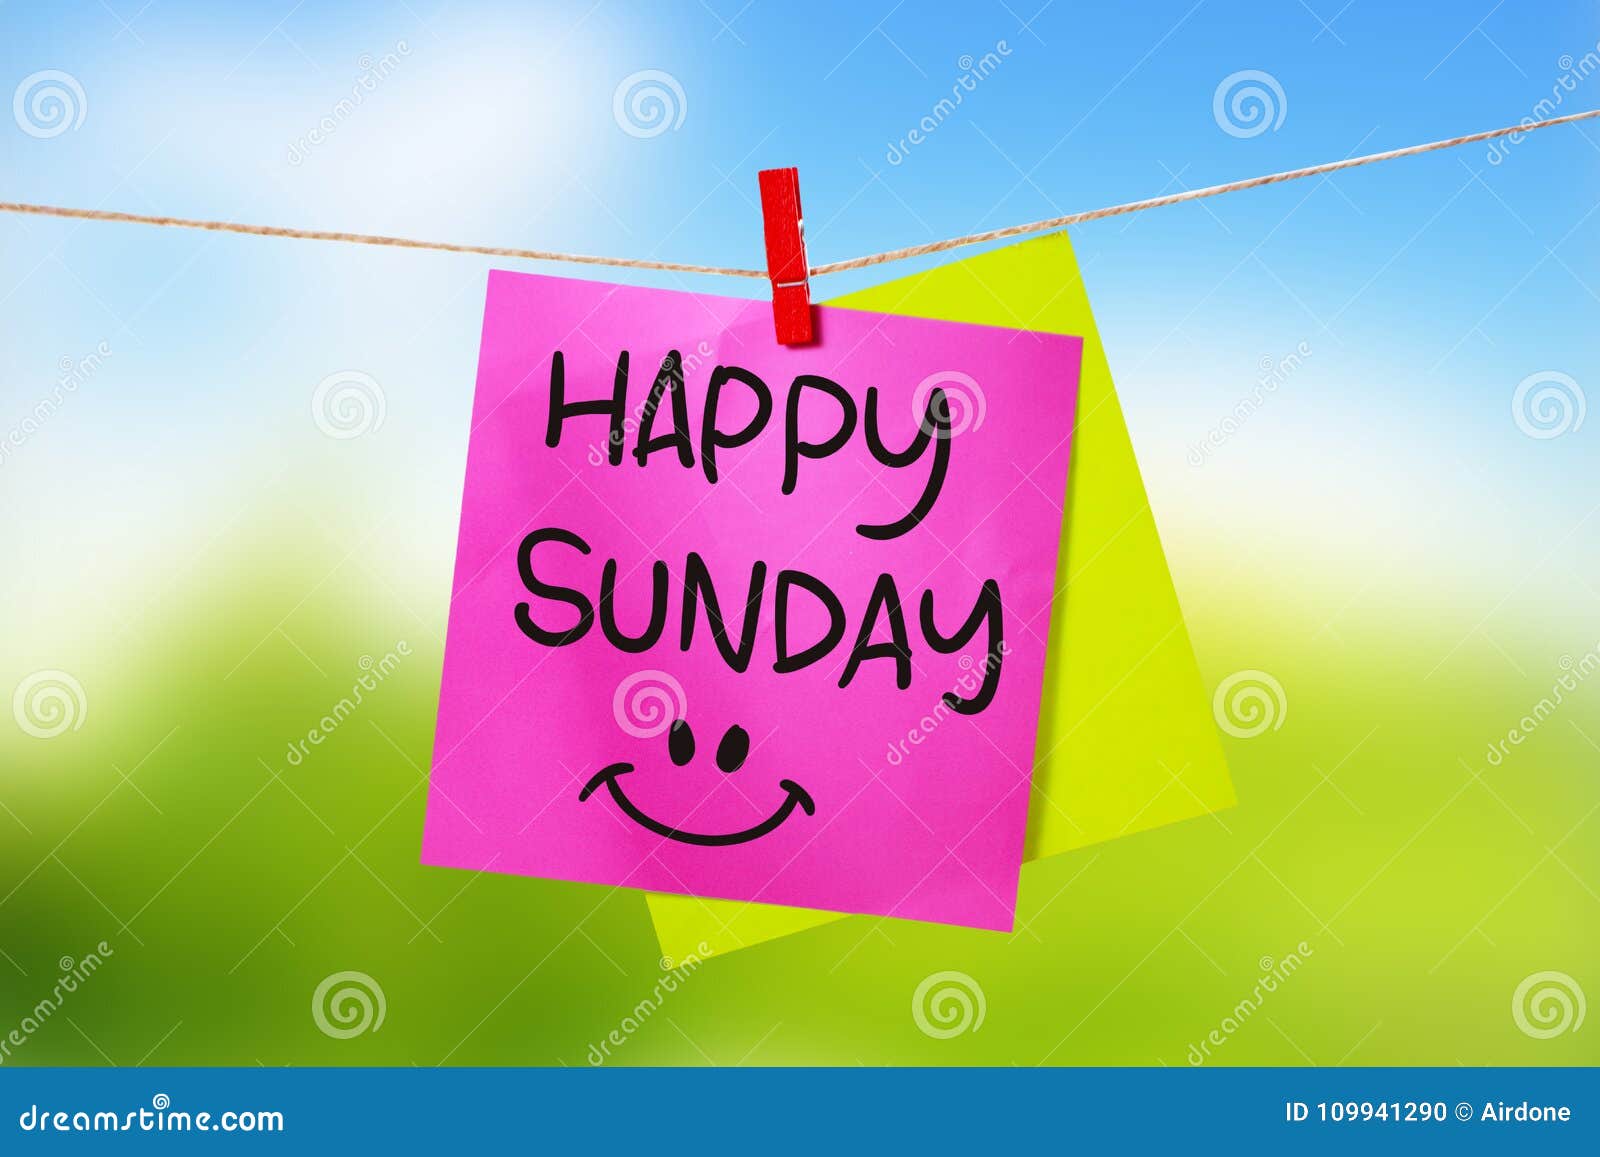 Happy Sunday, Motivational Text Stock Photo - Image of 